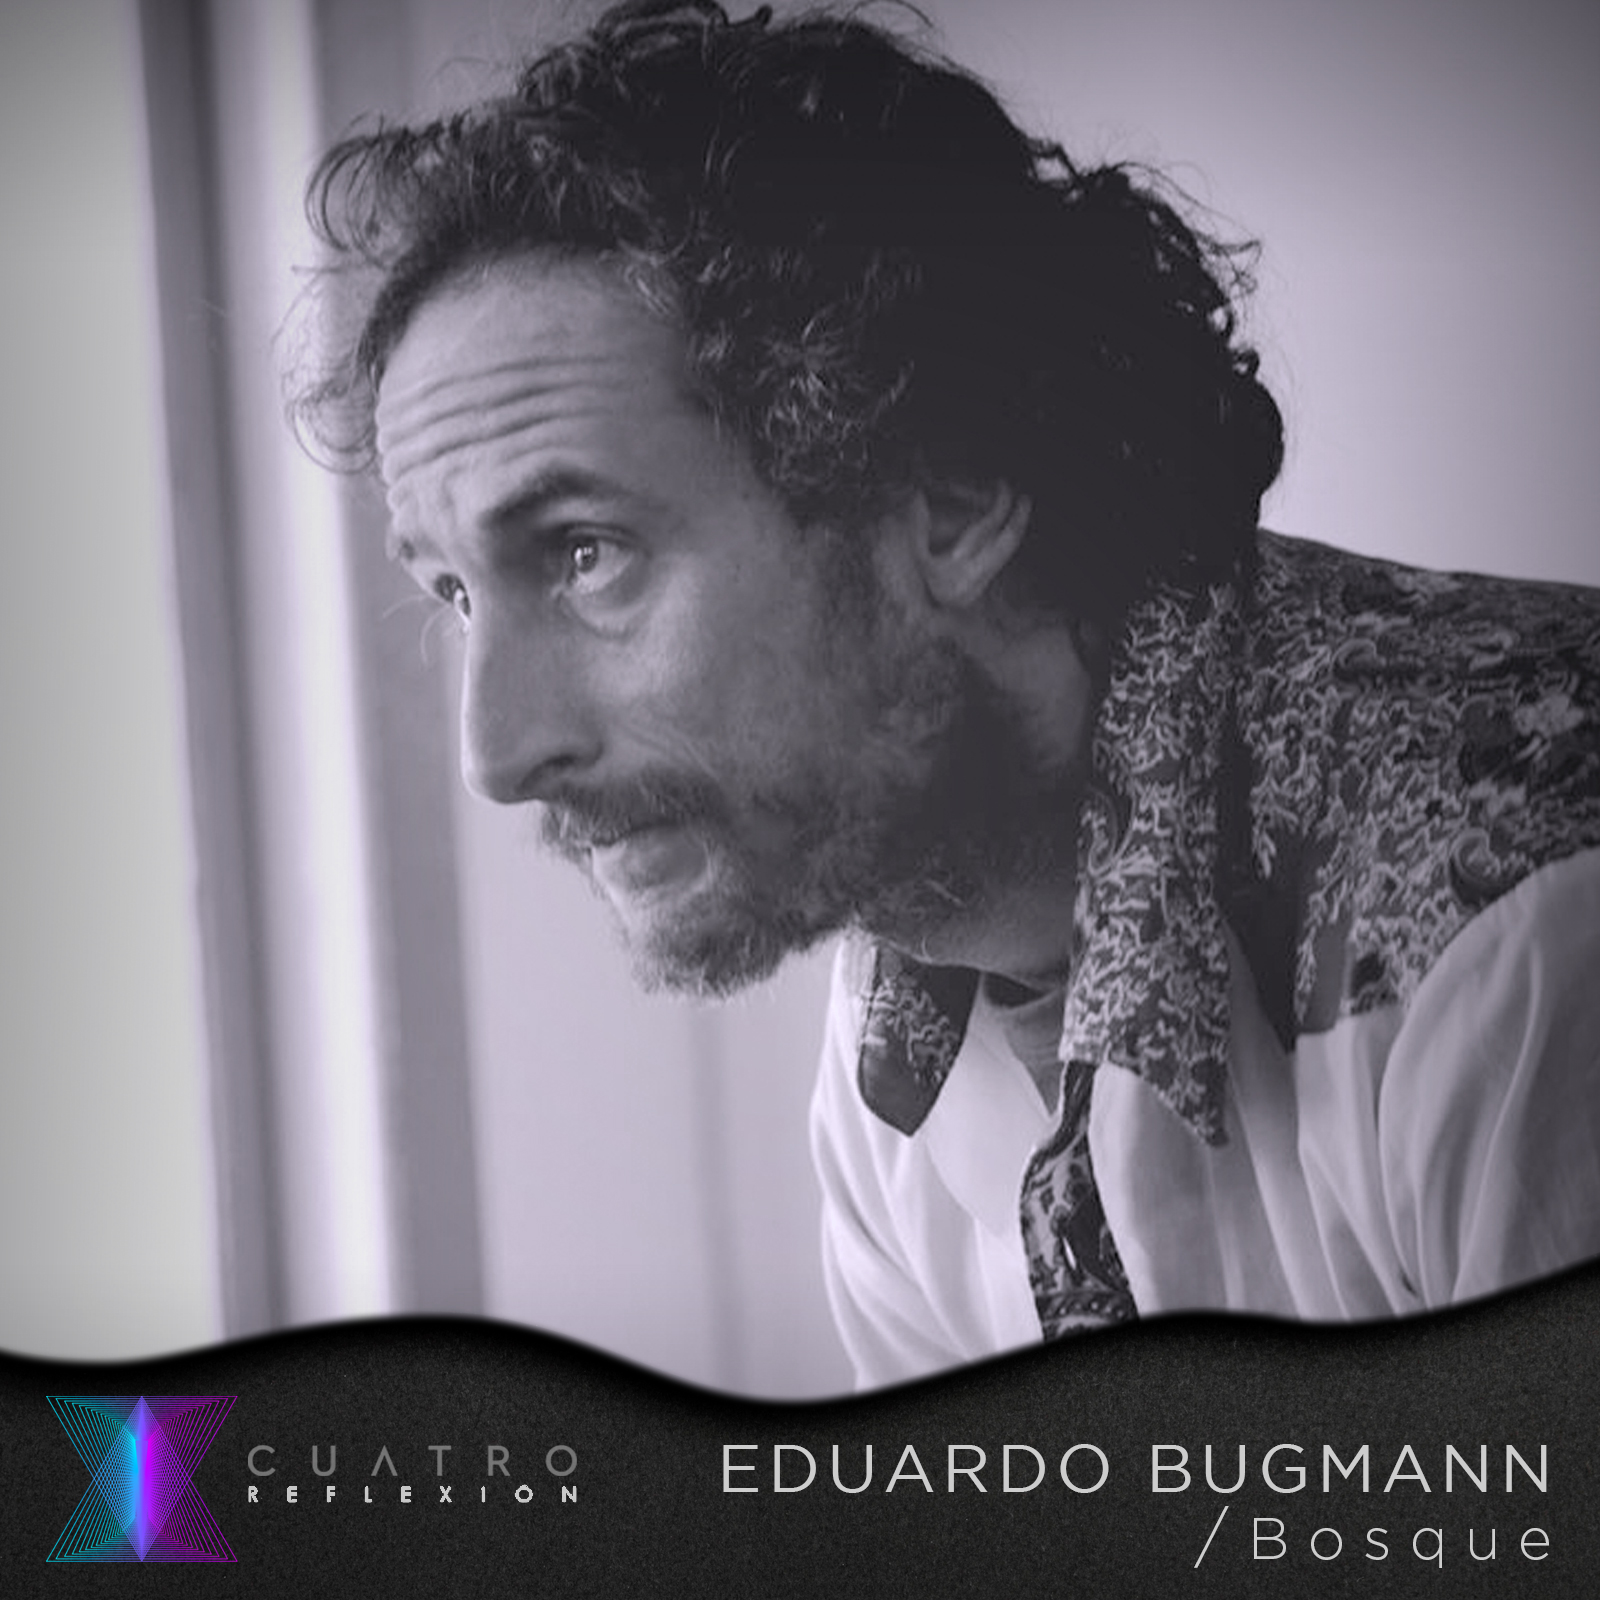 Eduardo Bugmann